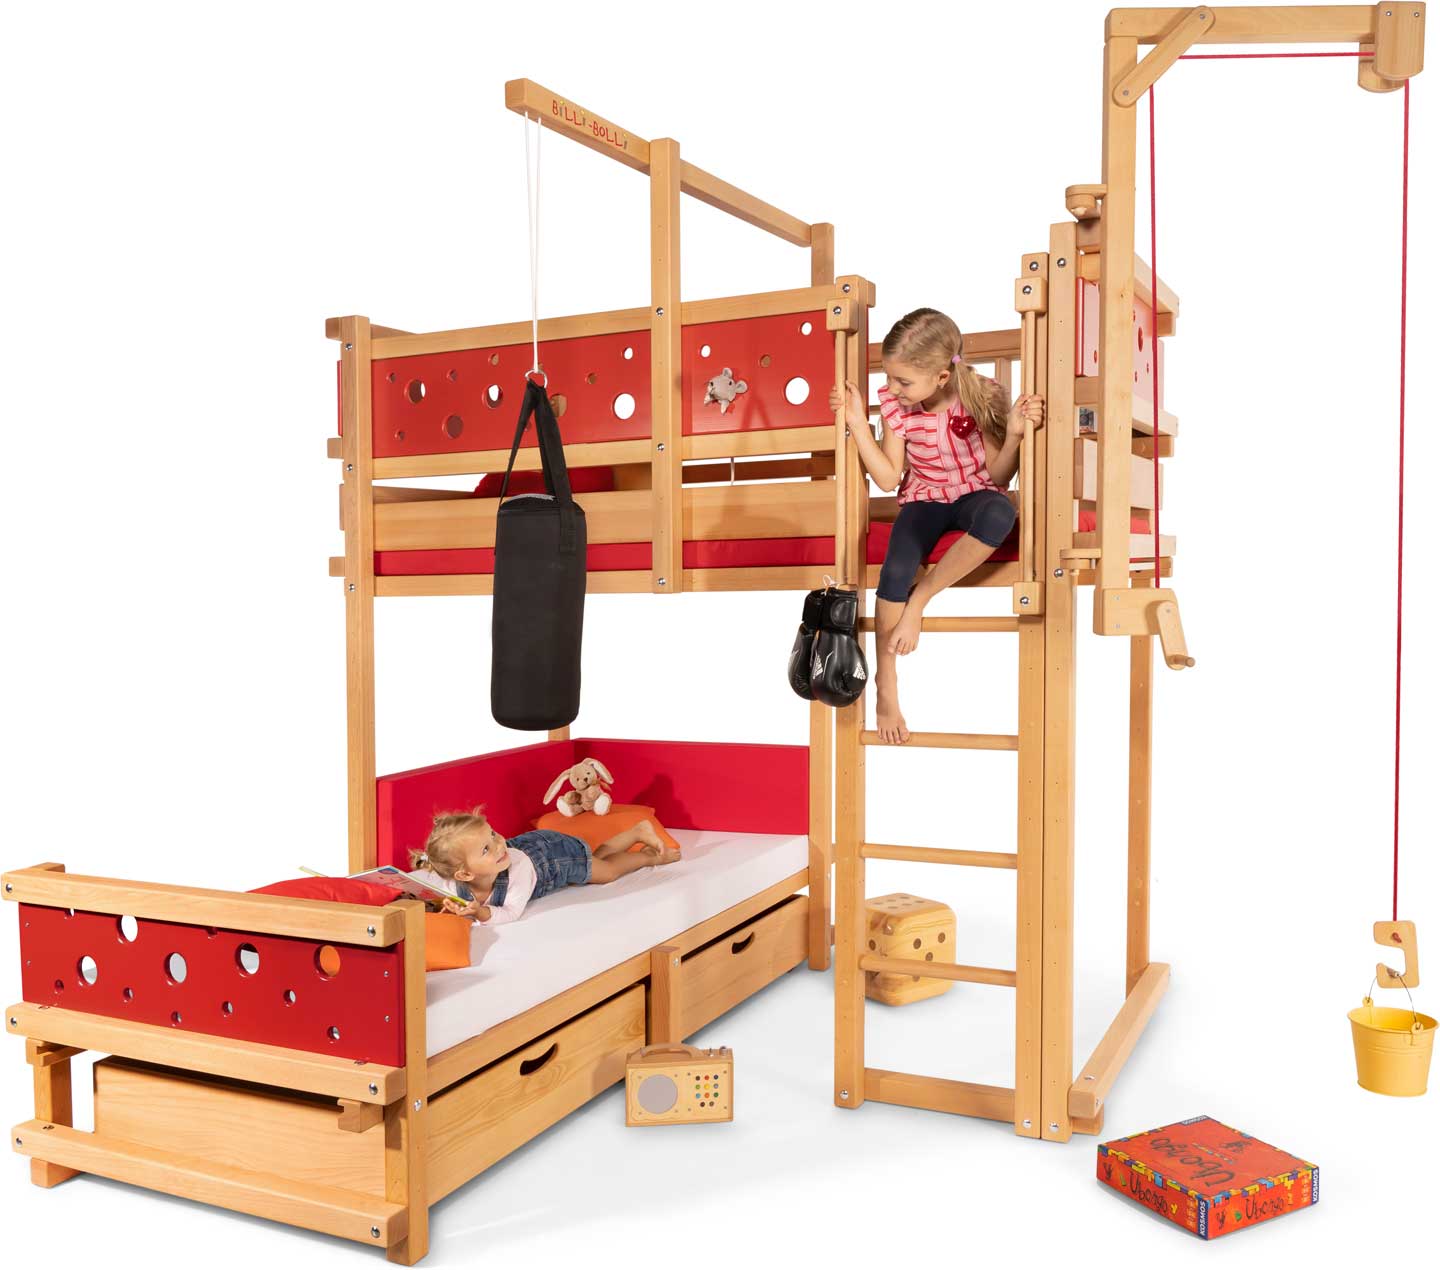 Etagenbett-über-Eck: das Eck-Bett für 2 Kinder (Kinderbetten)